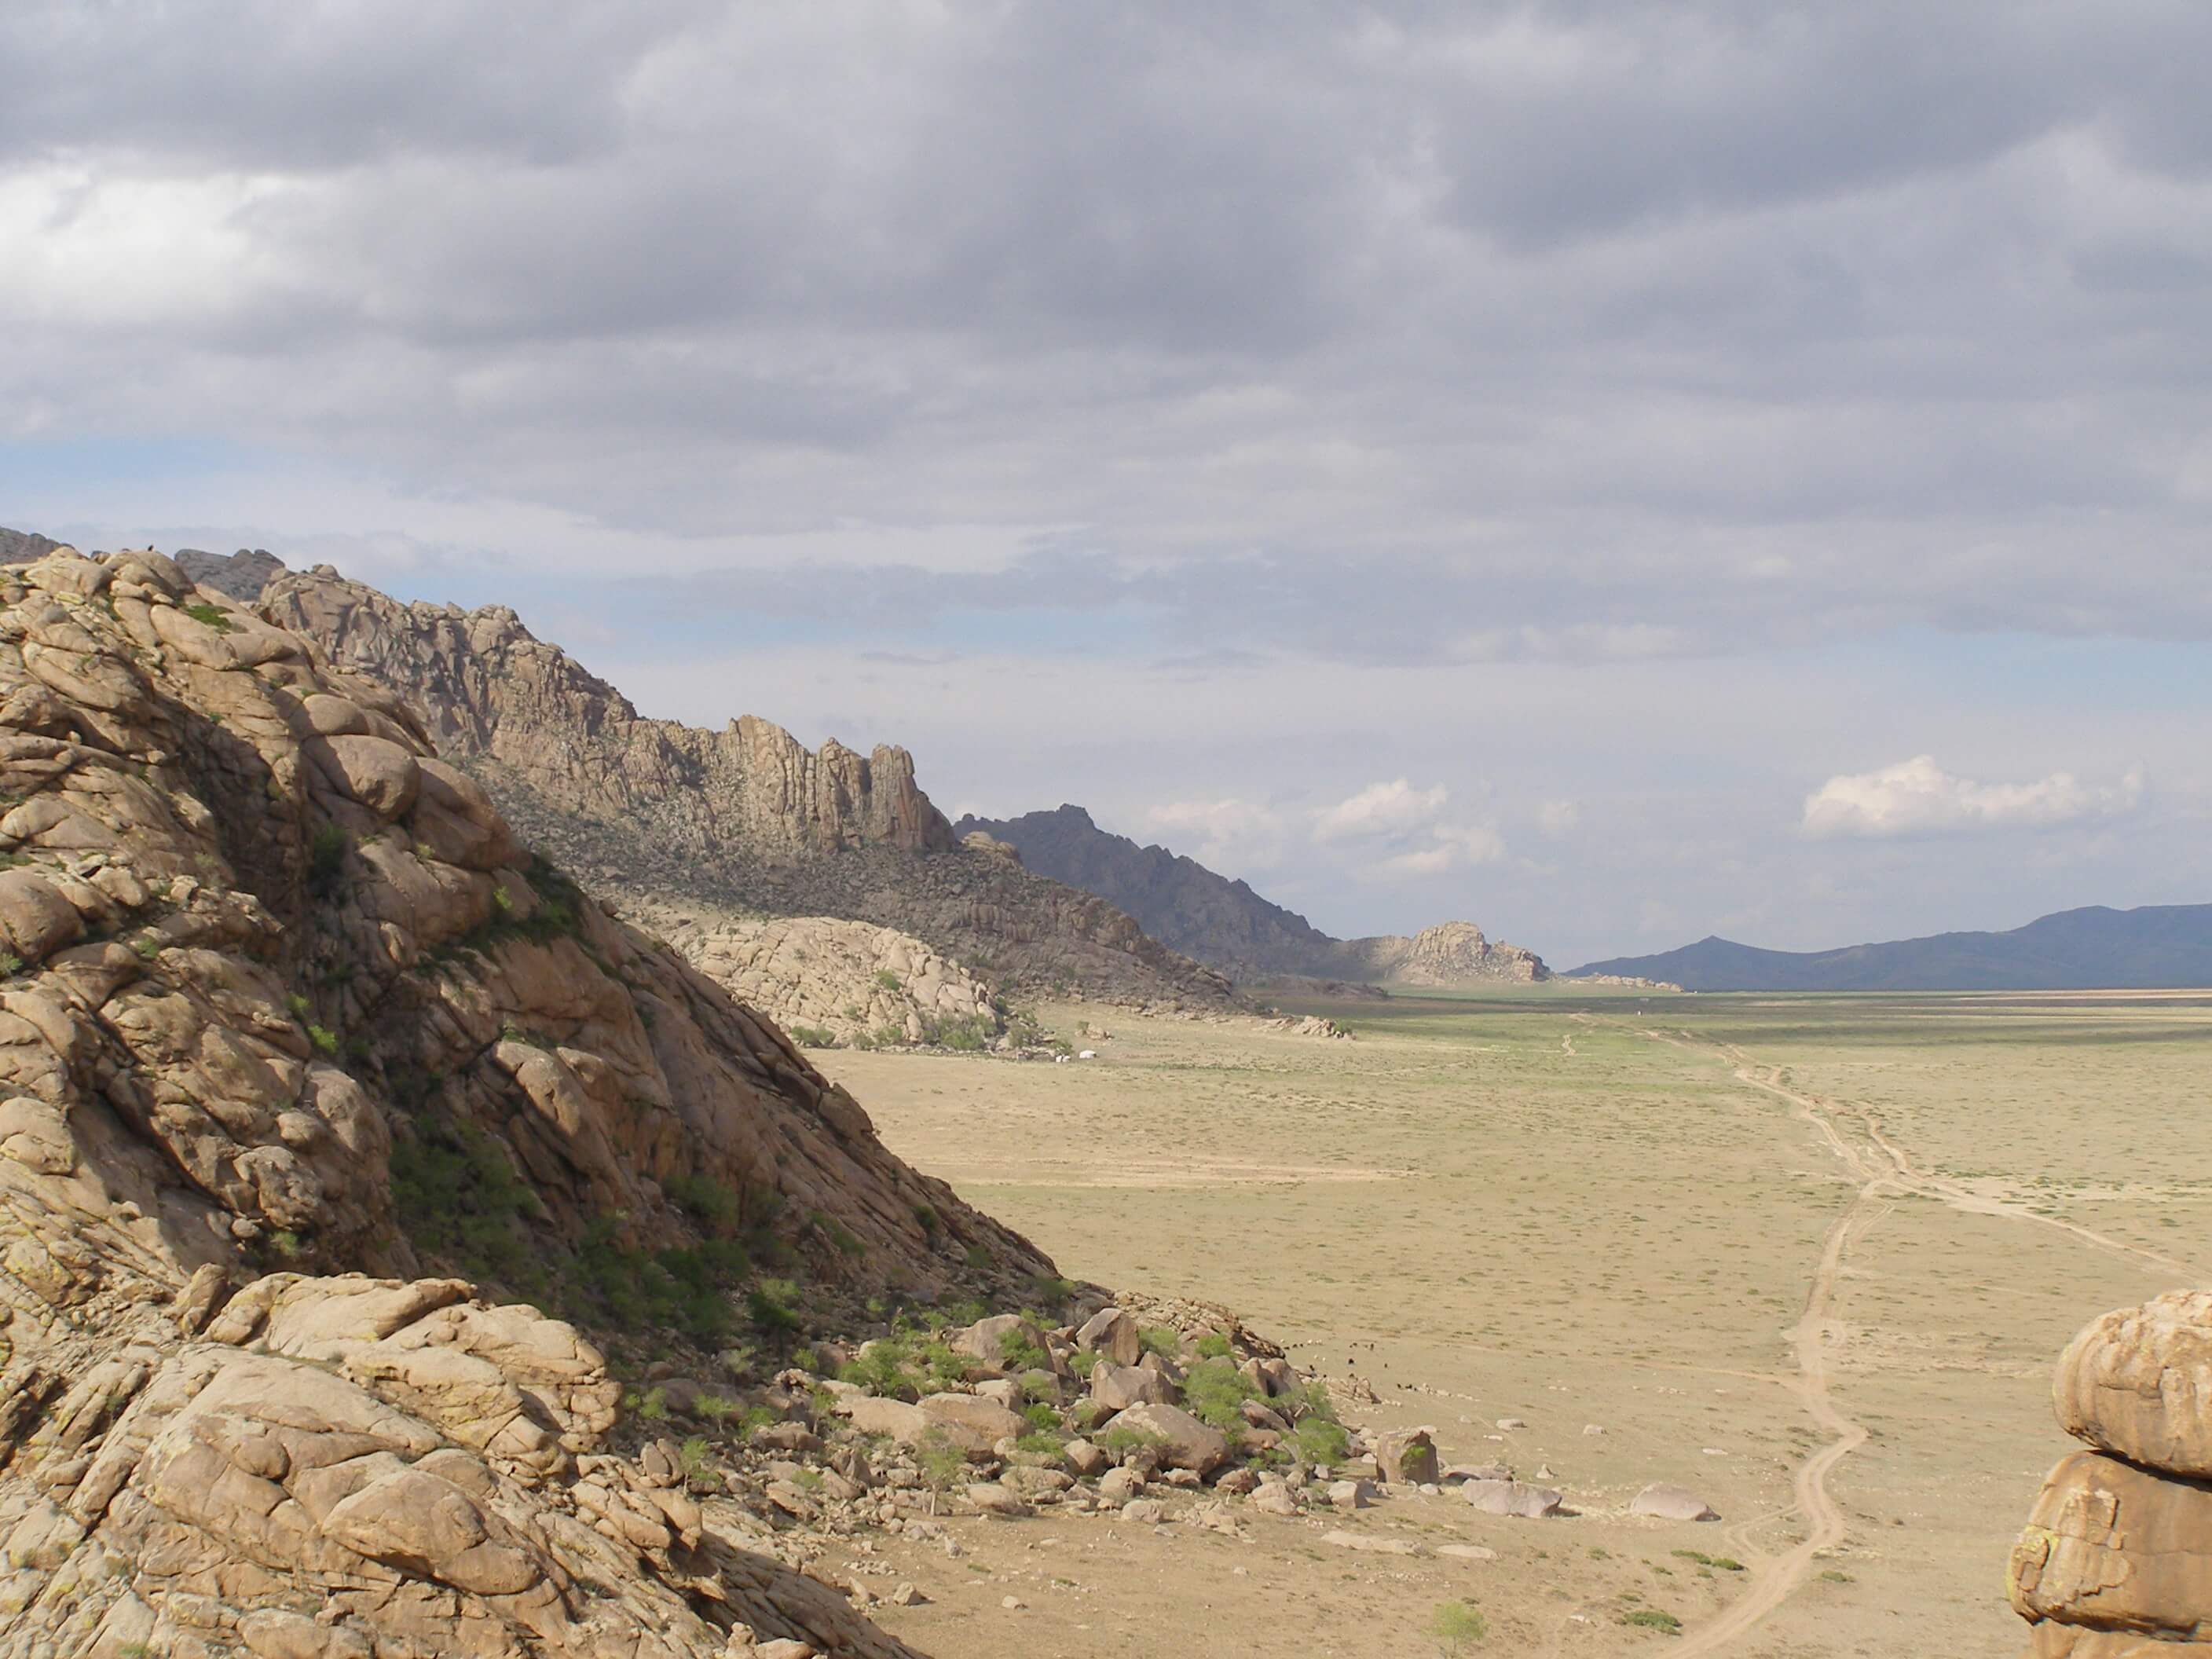 mongolie, wieds uitzicht steppe.jpg